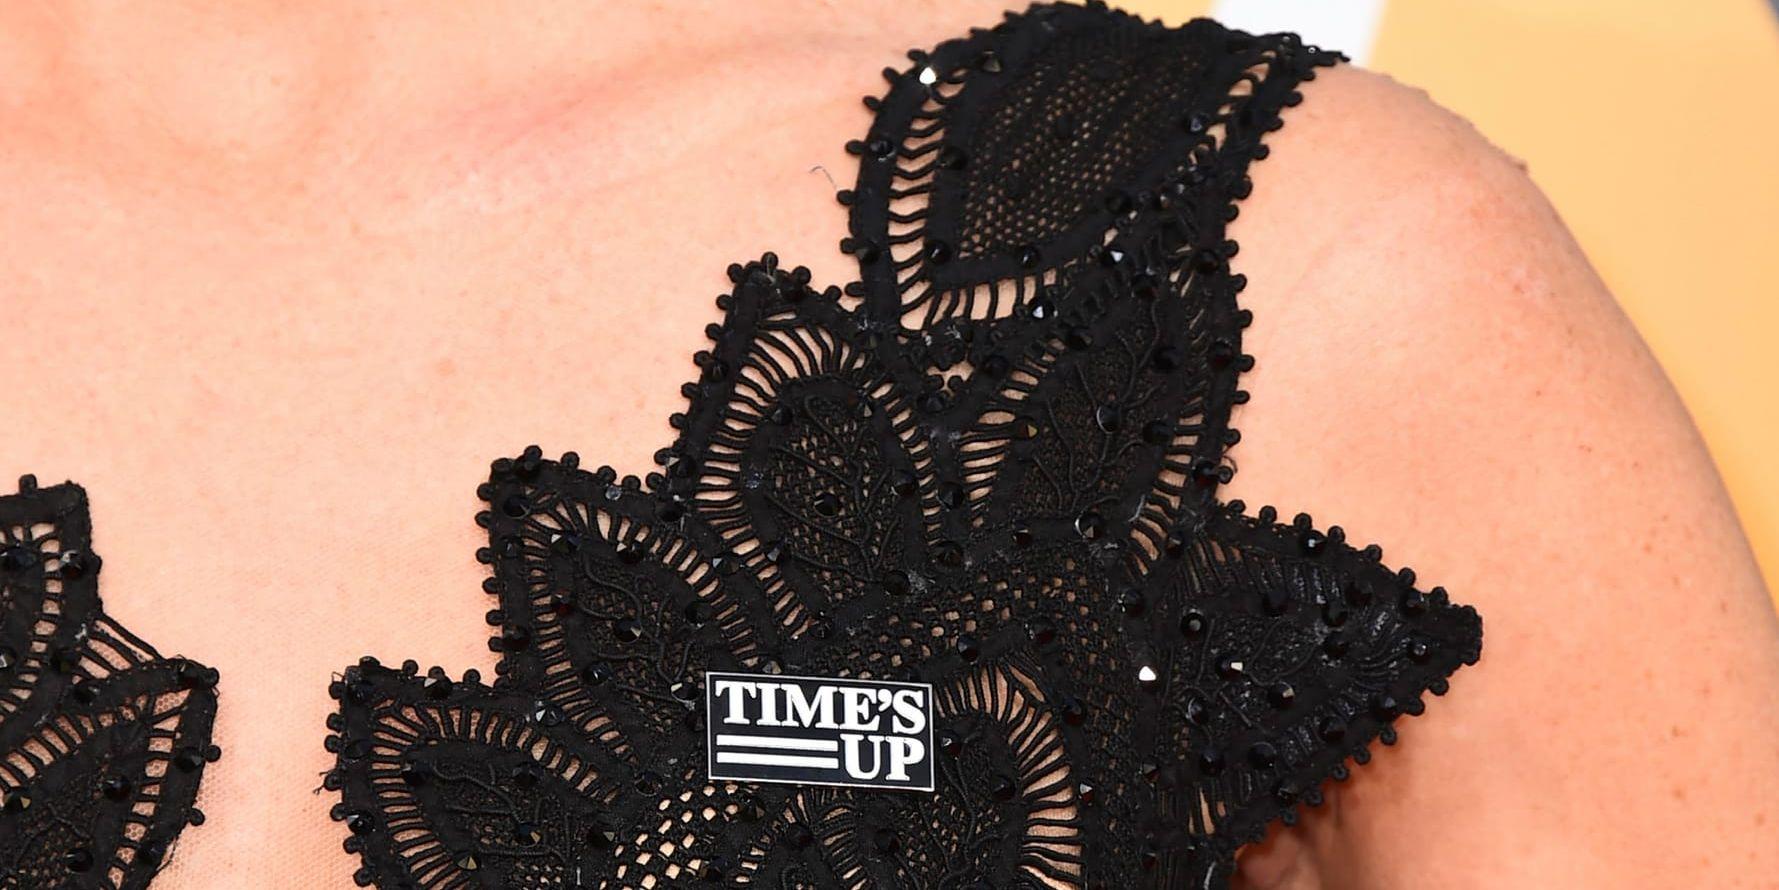 Förra året bar många kända skådespelare svart samt en pin med texten "Time's up" på Golden Globe-galan. I år är det armband som gäller. Arkivbild.